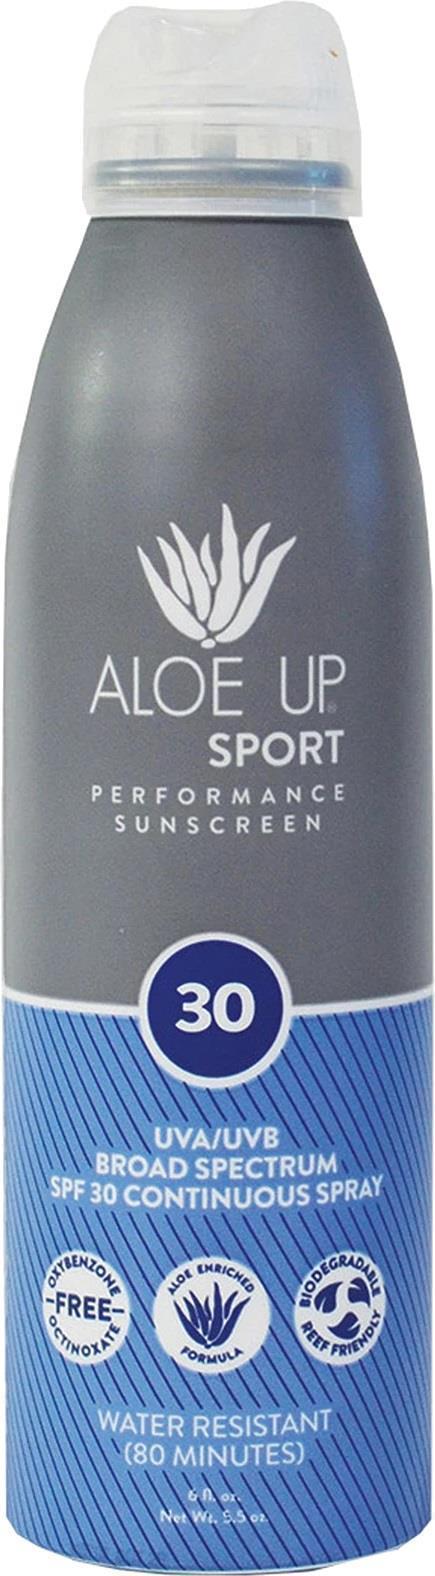 Aloe Up Sport SPF 30 Continuous Spray Sunscreen - 6oz